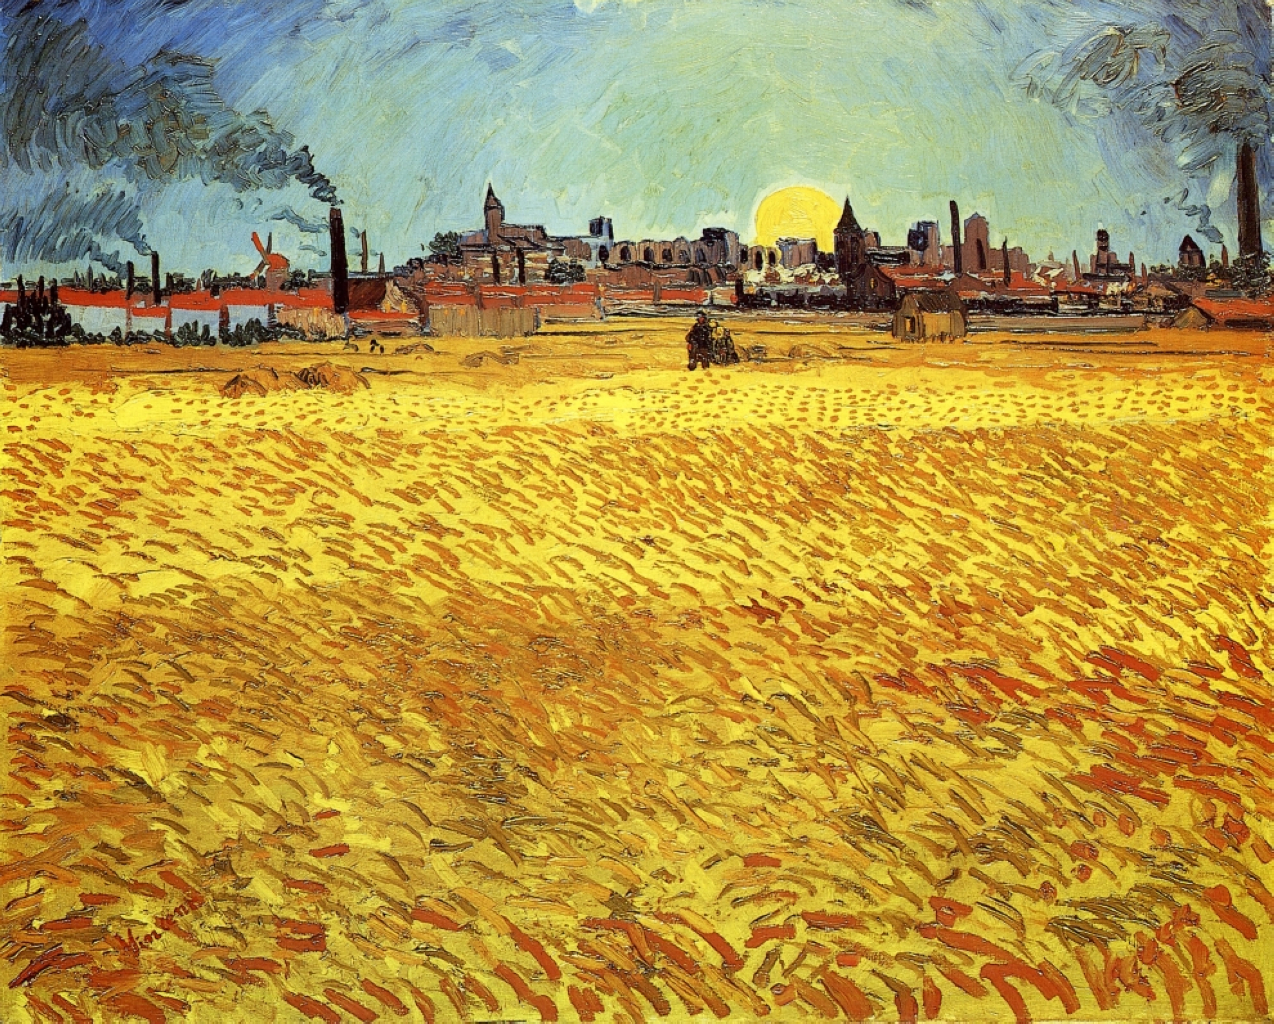  Tarde de verano, campo de trigo con sol poniente by Vincent van Gogh - 1888 - 188 x 231 cm Kunstmuseum Winterthur